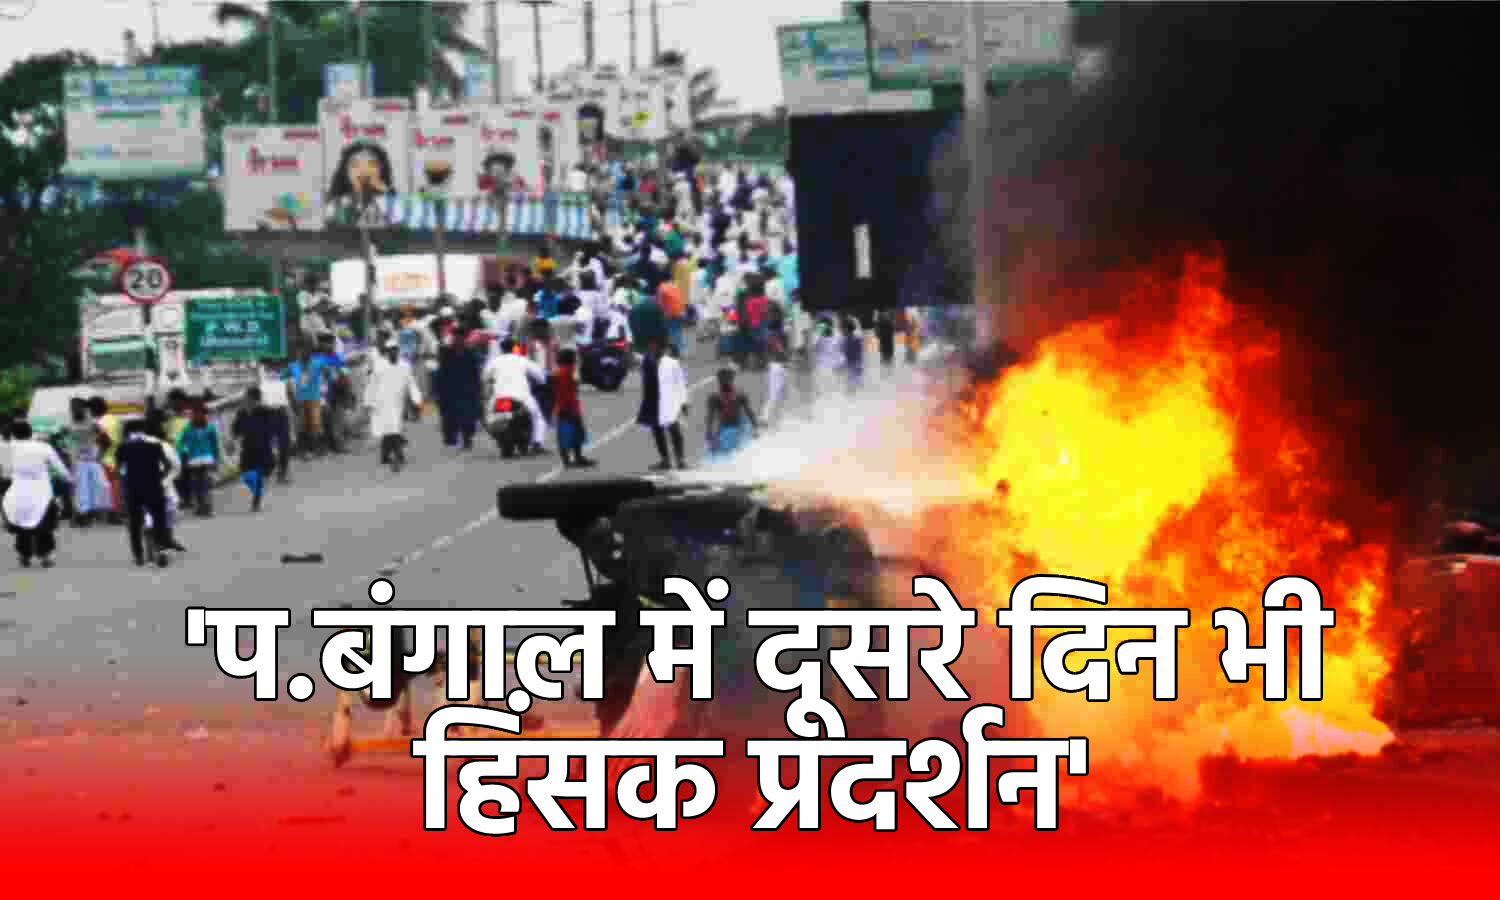 West Bengal Violence : हावड़ा में दूसरे दिन भी हिंसा जारी, जमकर पथराव और आगजनी, ममता बनर्जी ने BJP पर लगाया दंगे कराने का आरोप